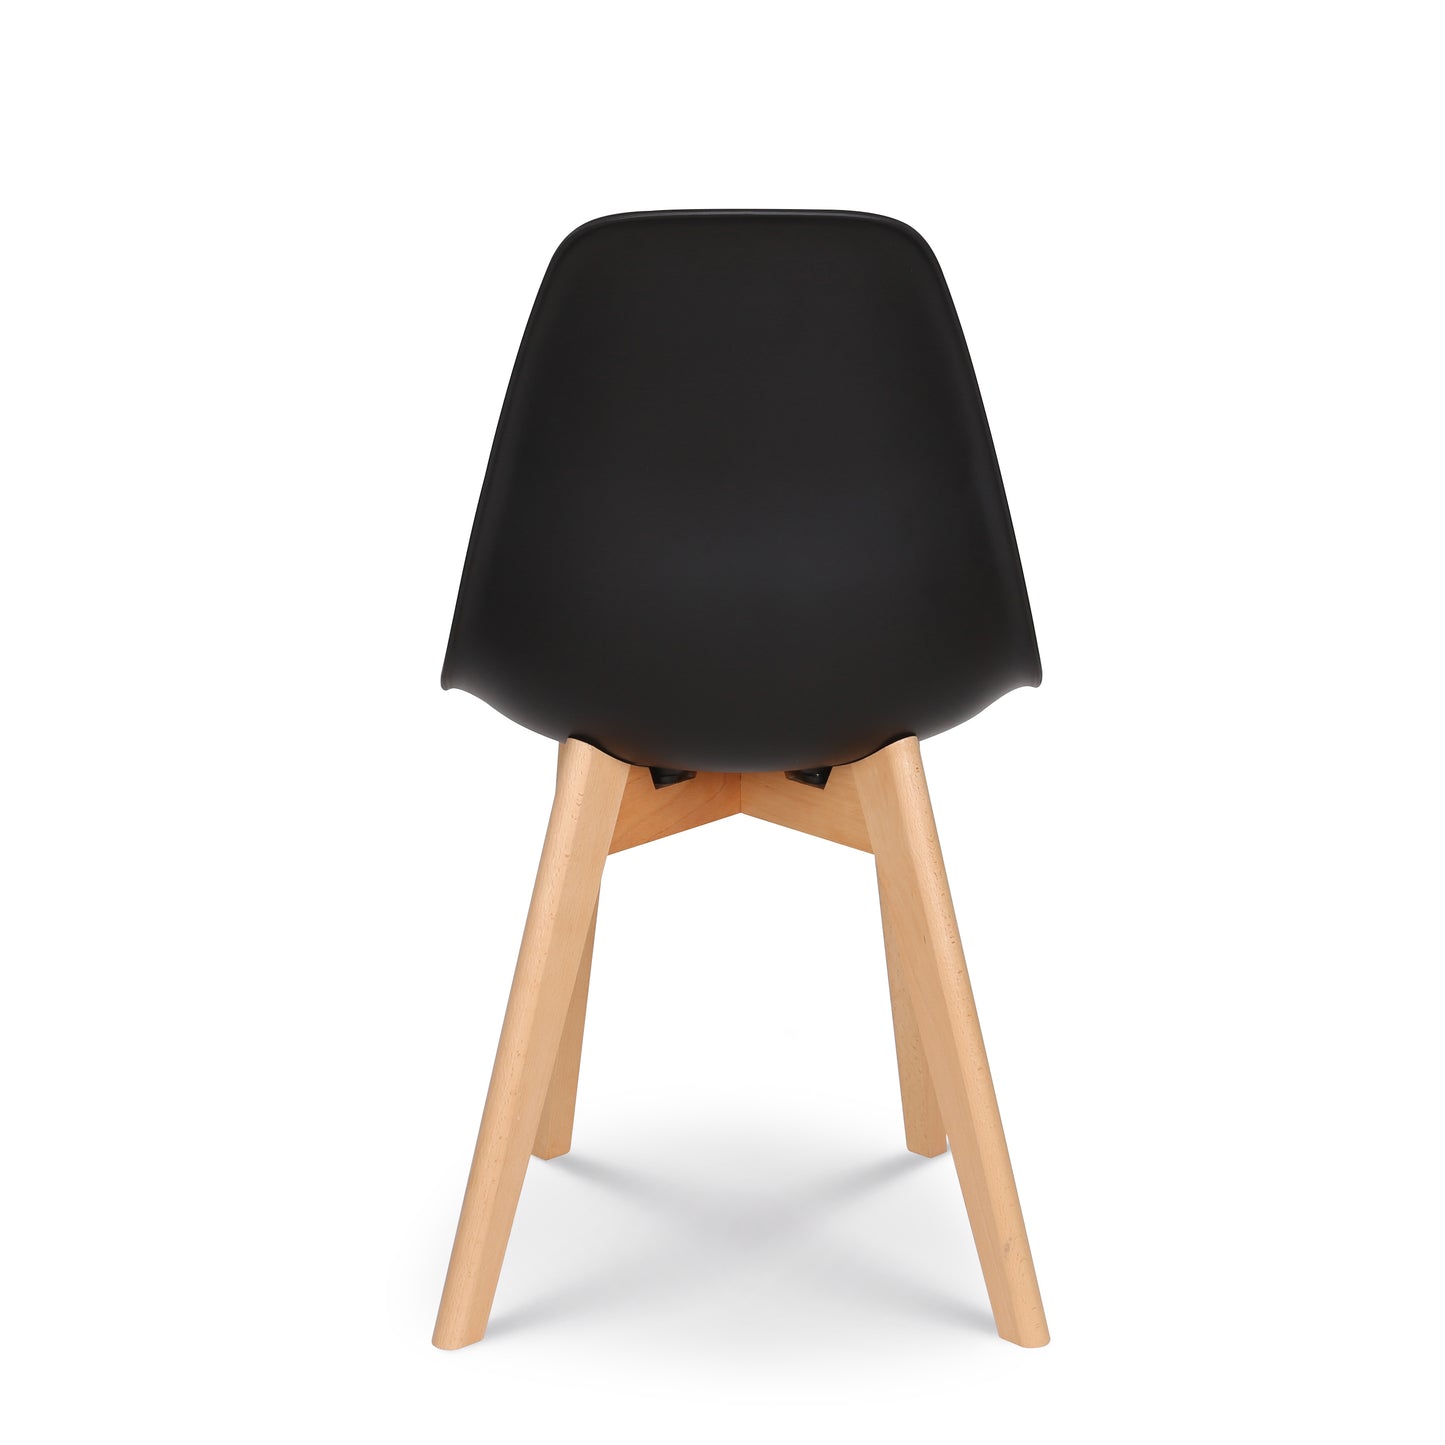 Chaise style scandinave modèle GABBY - Coque en résine noire et pieds en bois naturel